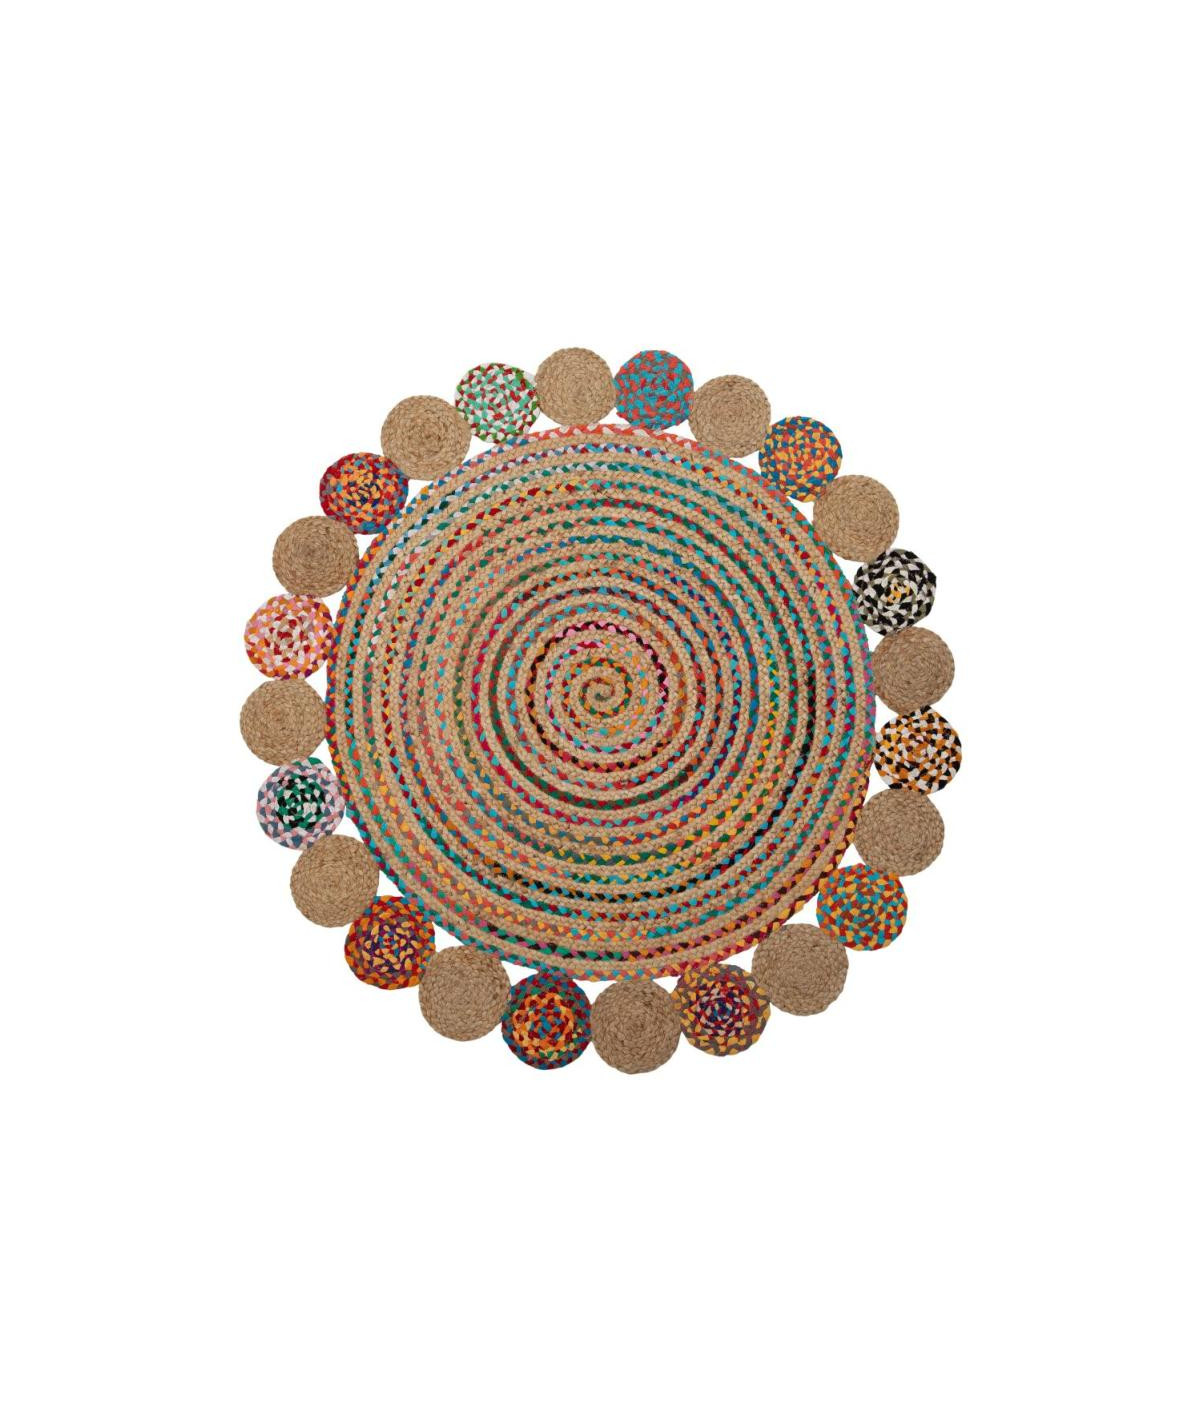 Tapis jute rond multicolore Diam120cm - Exotica |YESDEKO